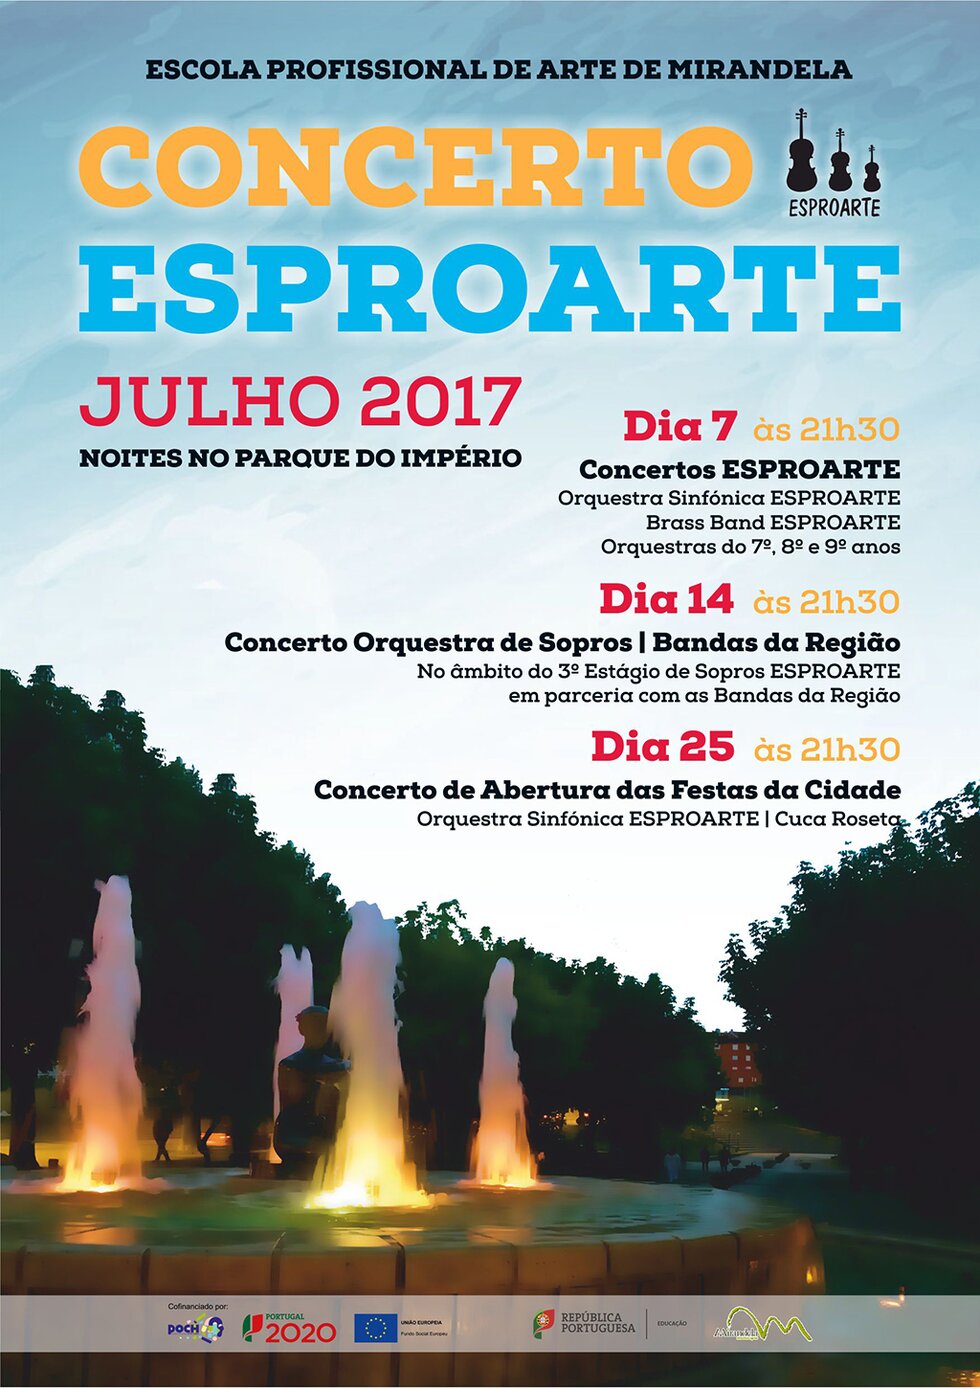 07_JUL_Concerto_Esproarte_Julho_2017